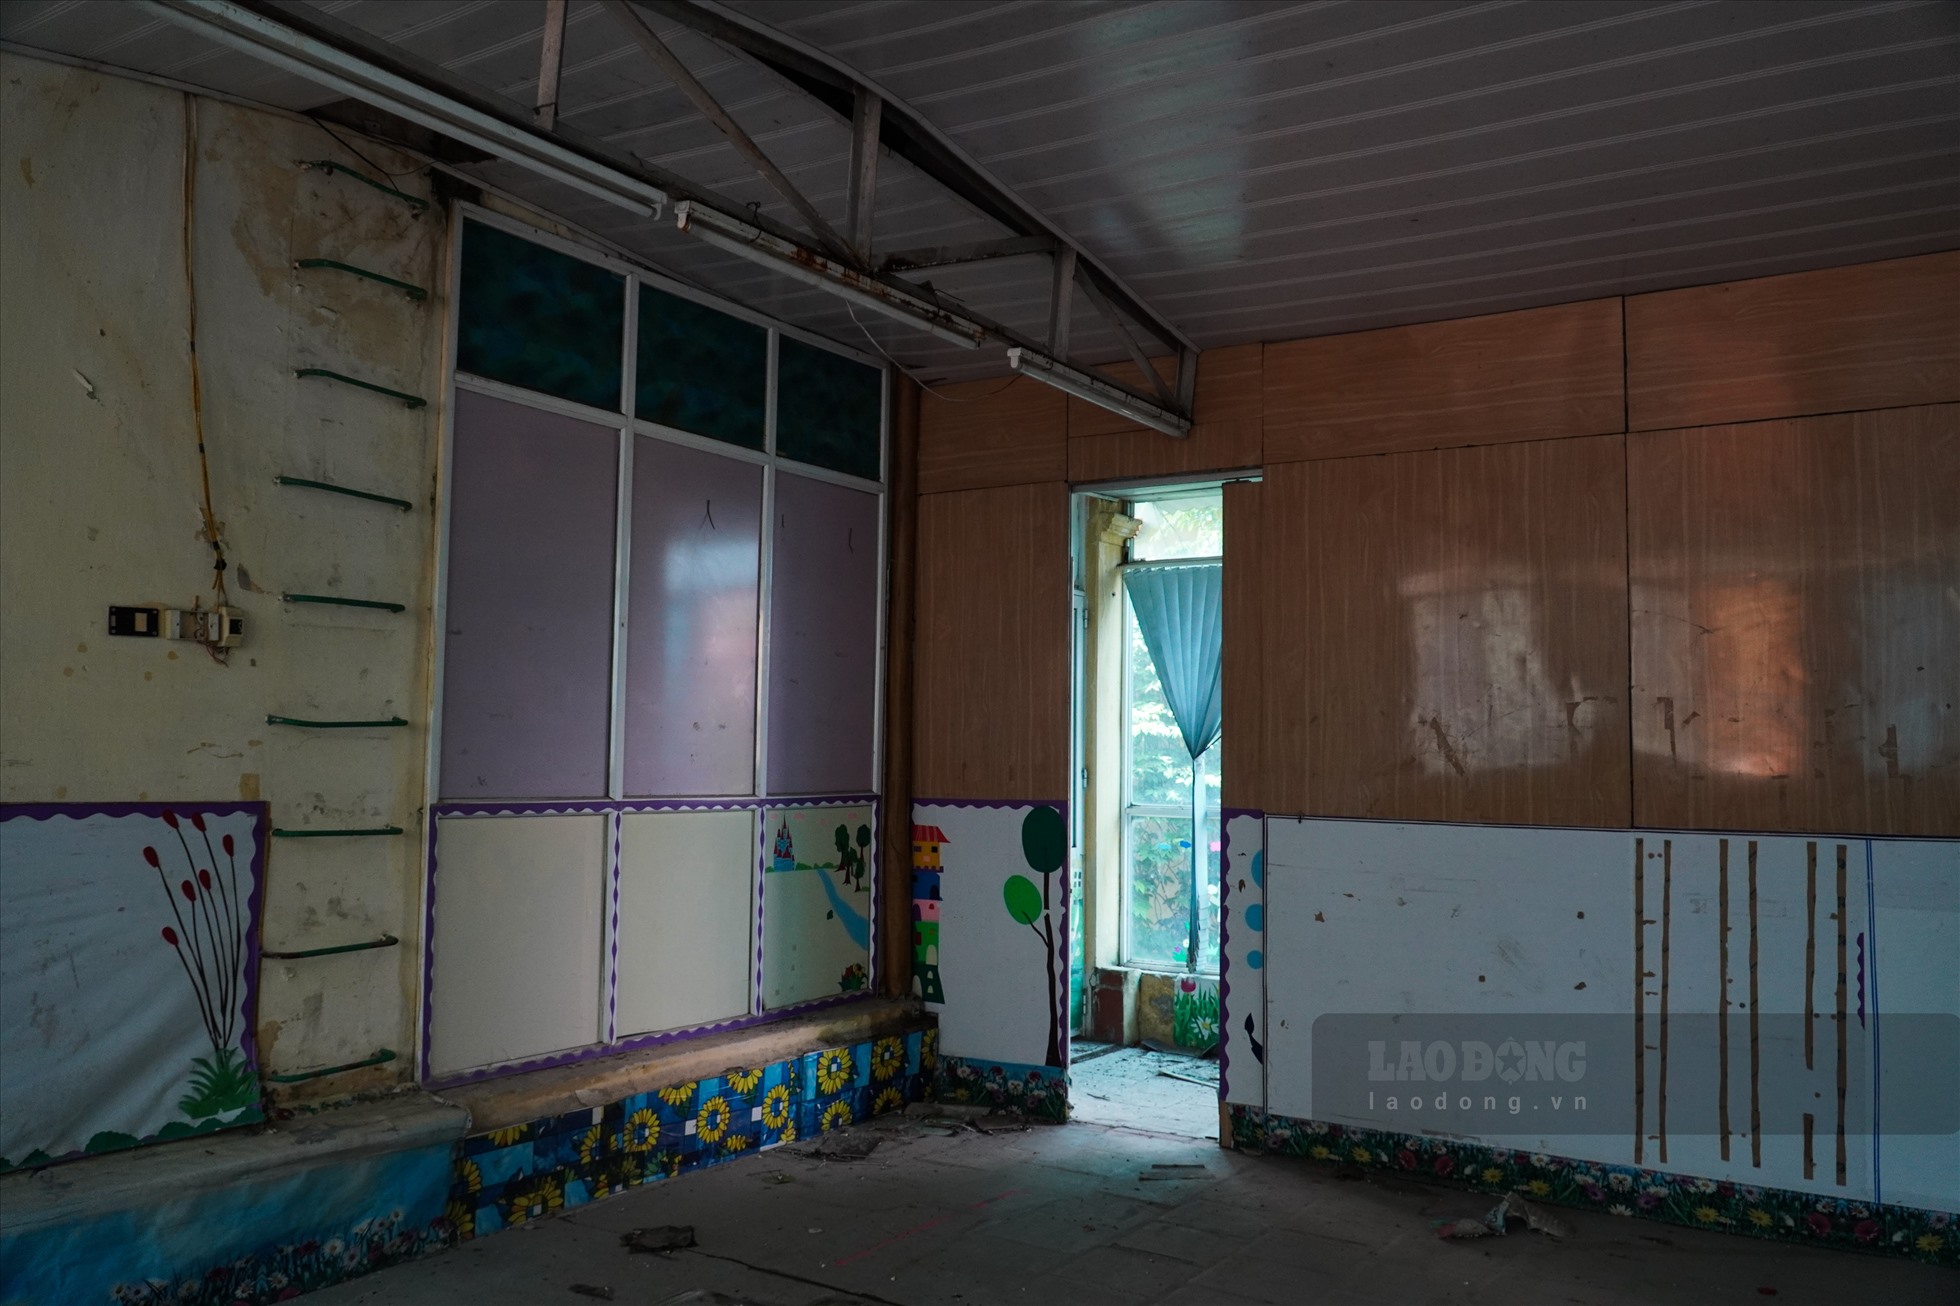 Tường của phòng học bong tróc, đèn điện do lâu không sử dụng hầu hết đã rơi rụng.